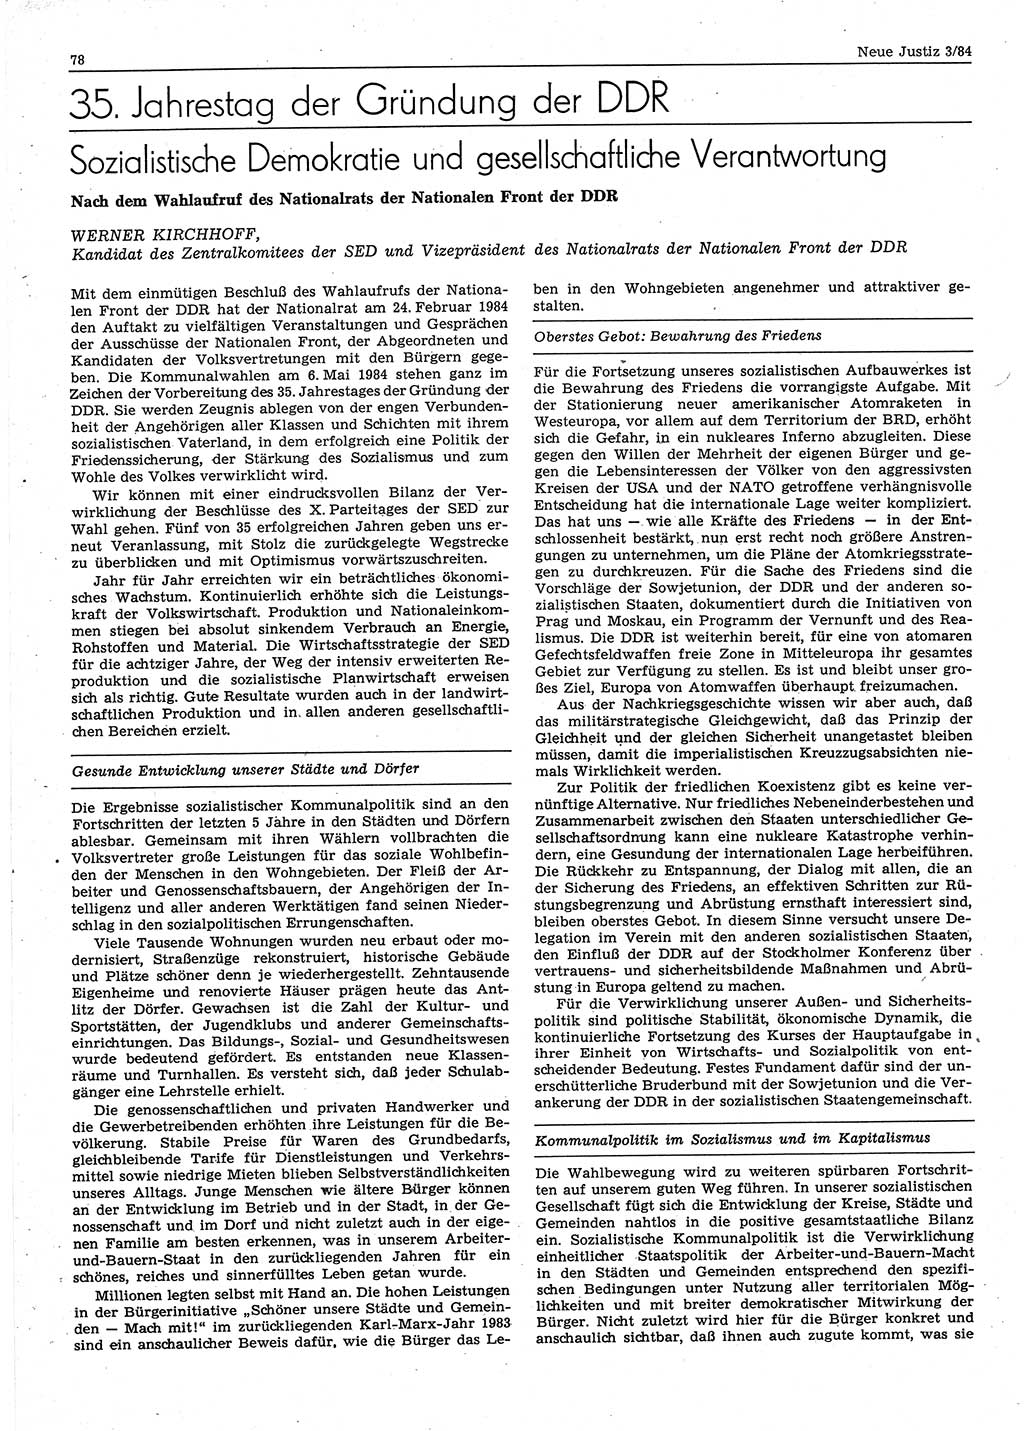 Neue Justiz (NJ), Zeitschrift für sozialistisches Recht und Gesetzlichkeit [Deutsche Demokratische Republik (DDR)], 38. Jahrgang 1984, Seite 78 (NJ DDR 1984, S. 78)